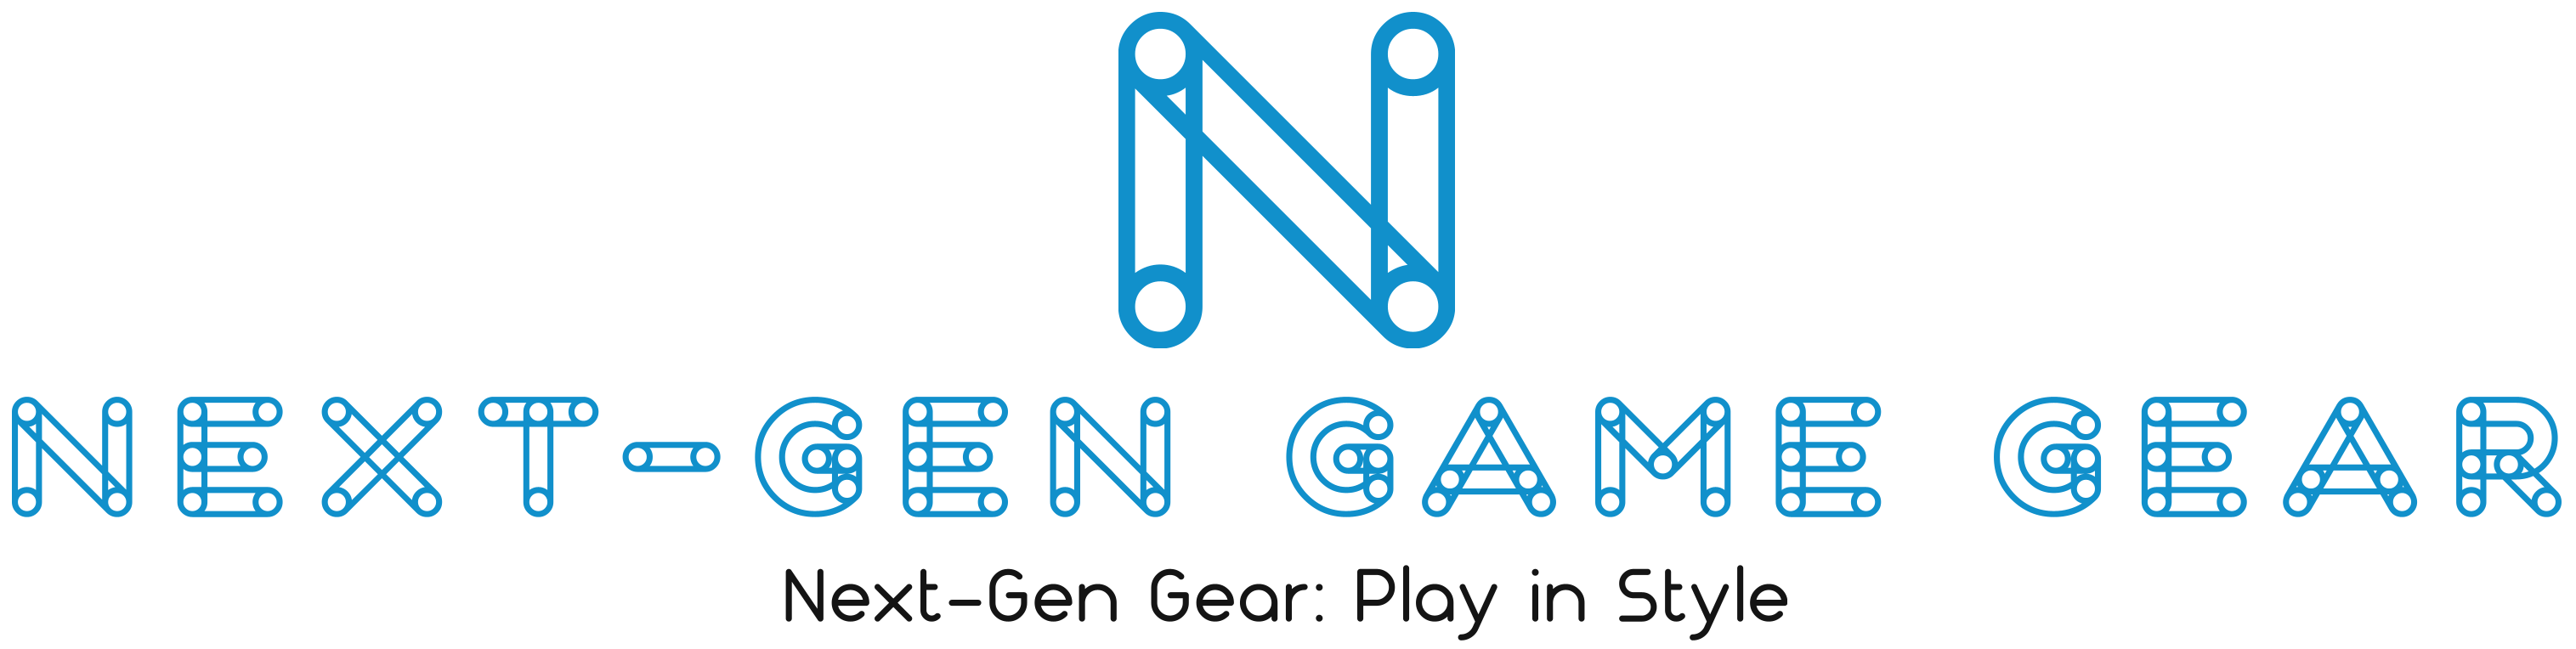 Next-Gen Game Gear